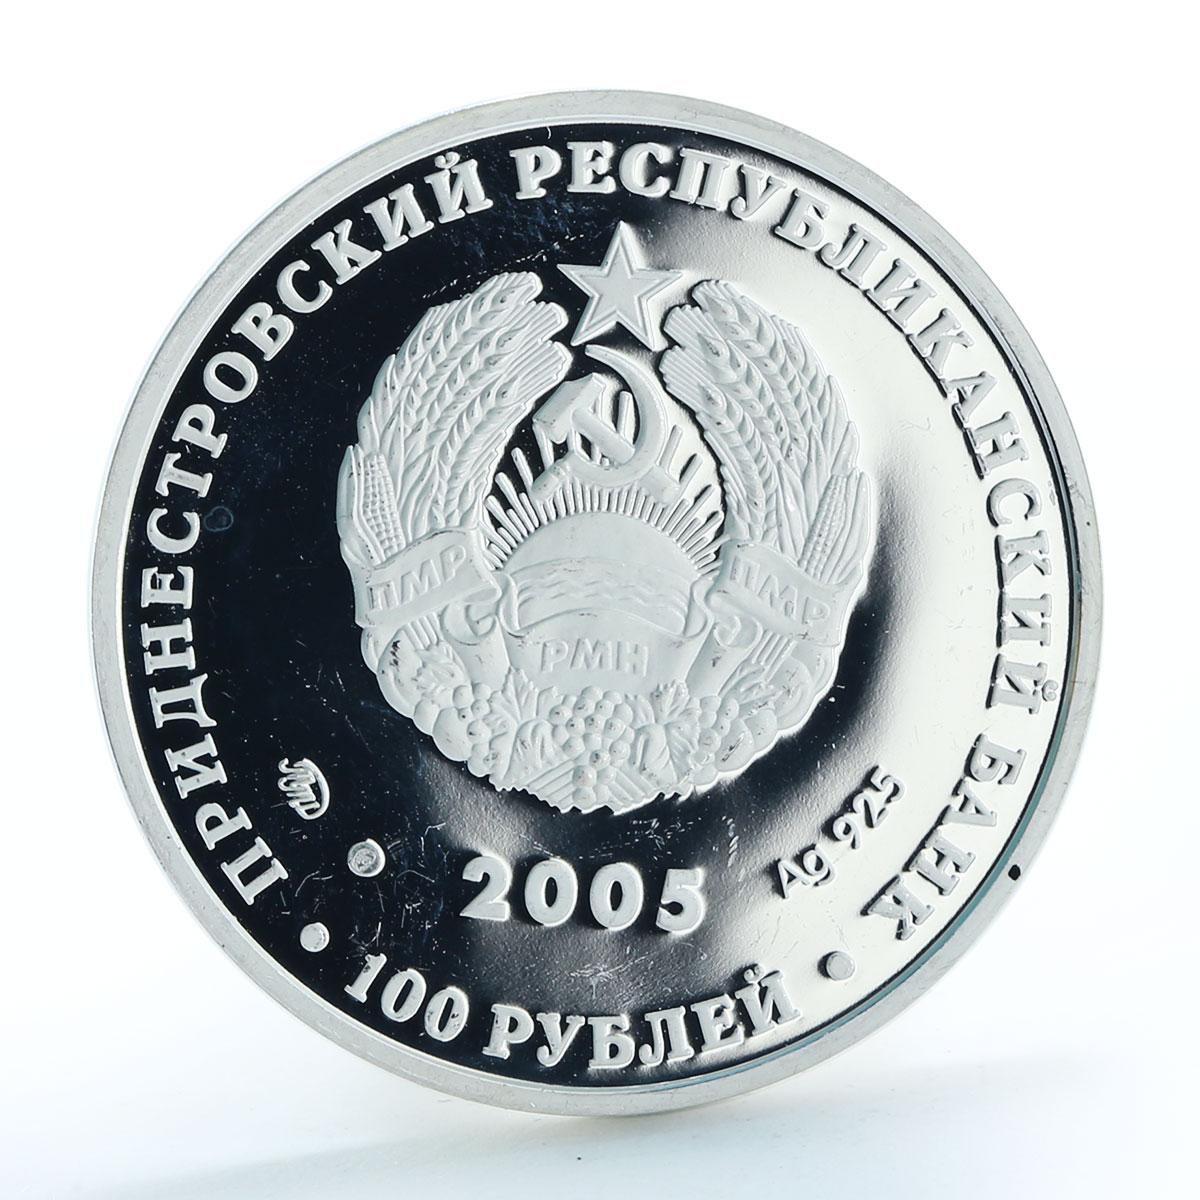 Transnistria 100 rubles Zodiac Series Leo proof silver coin 2005